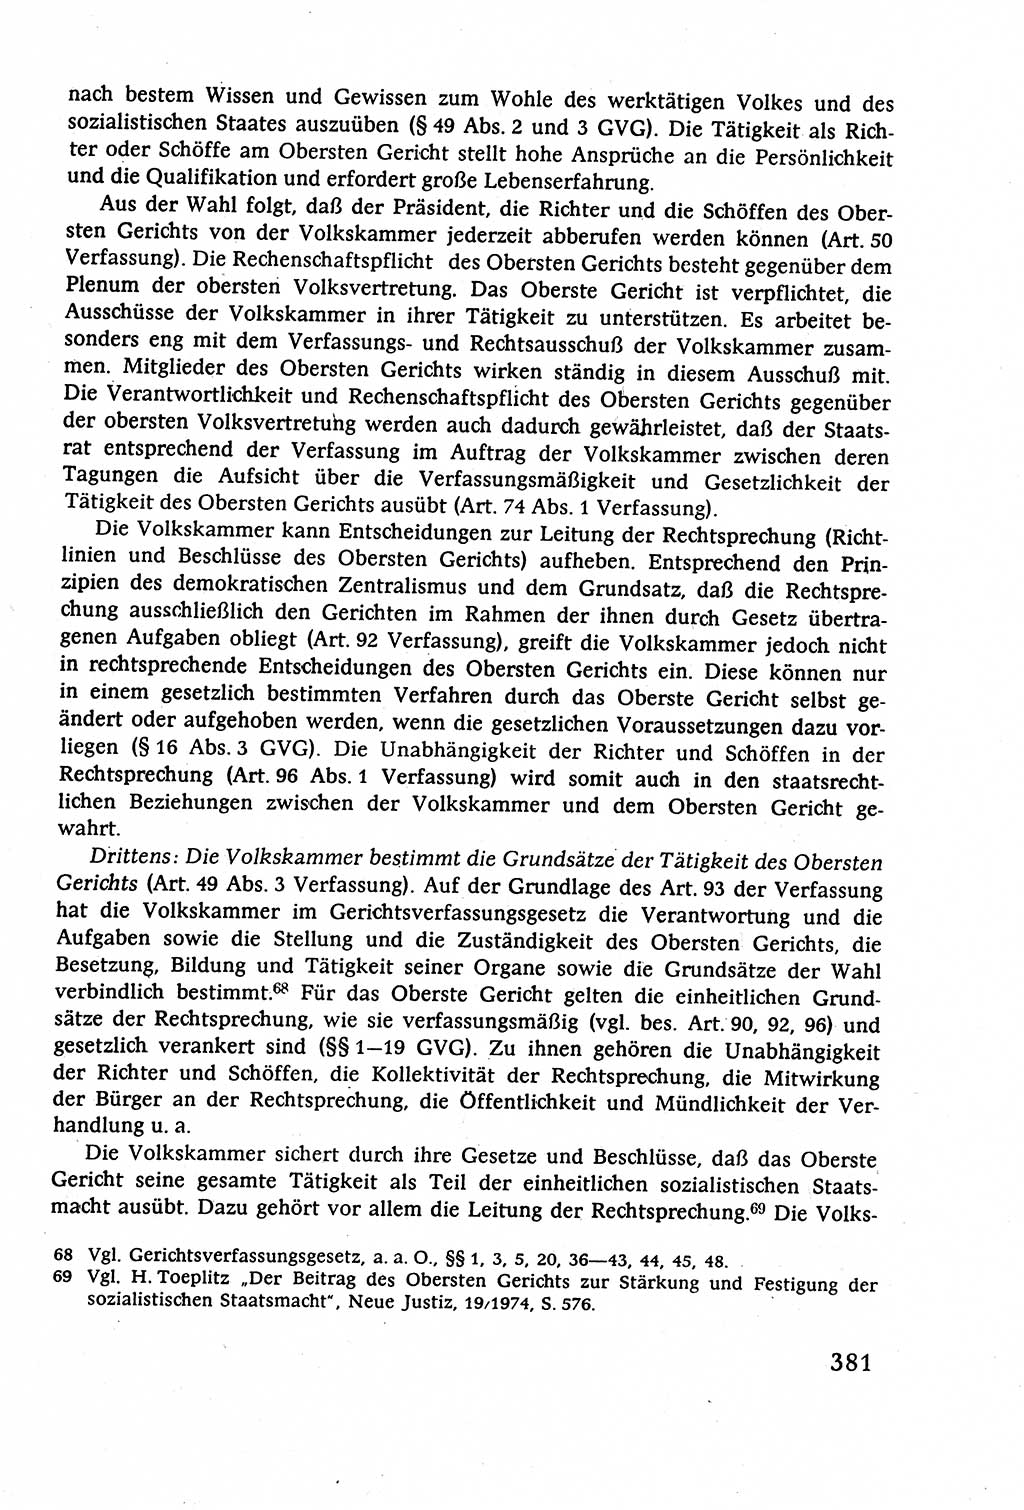 Staatsrecht der DDR (Deutsche Demokratische Republik), Lehrbuch 1977, Seite 381 (St.-R. DDR Lb. 1977, S. 381)